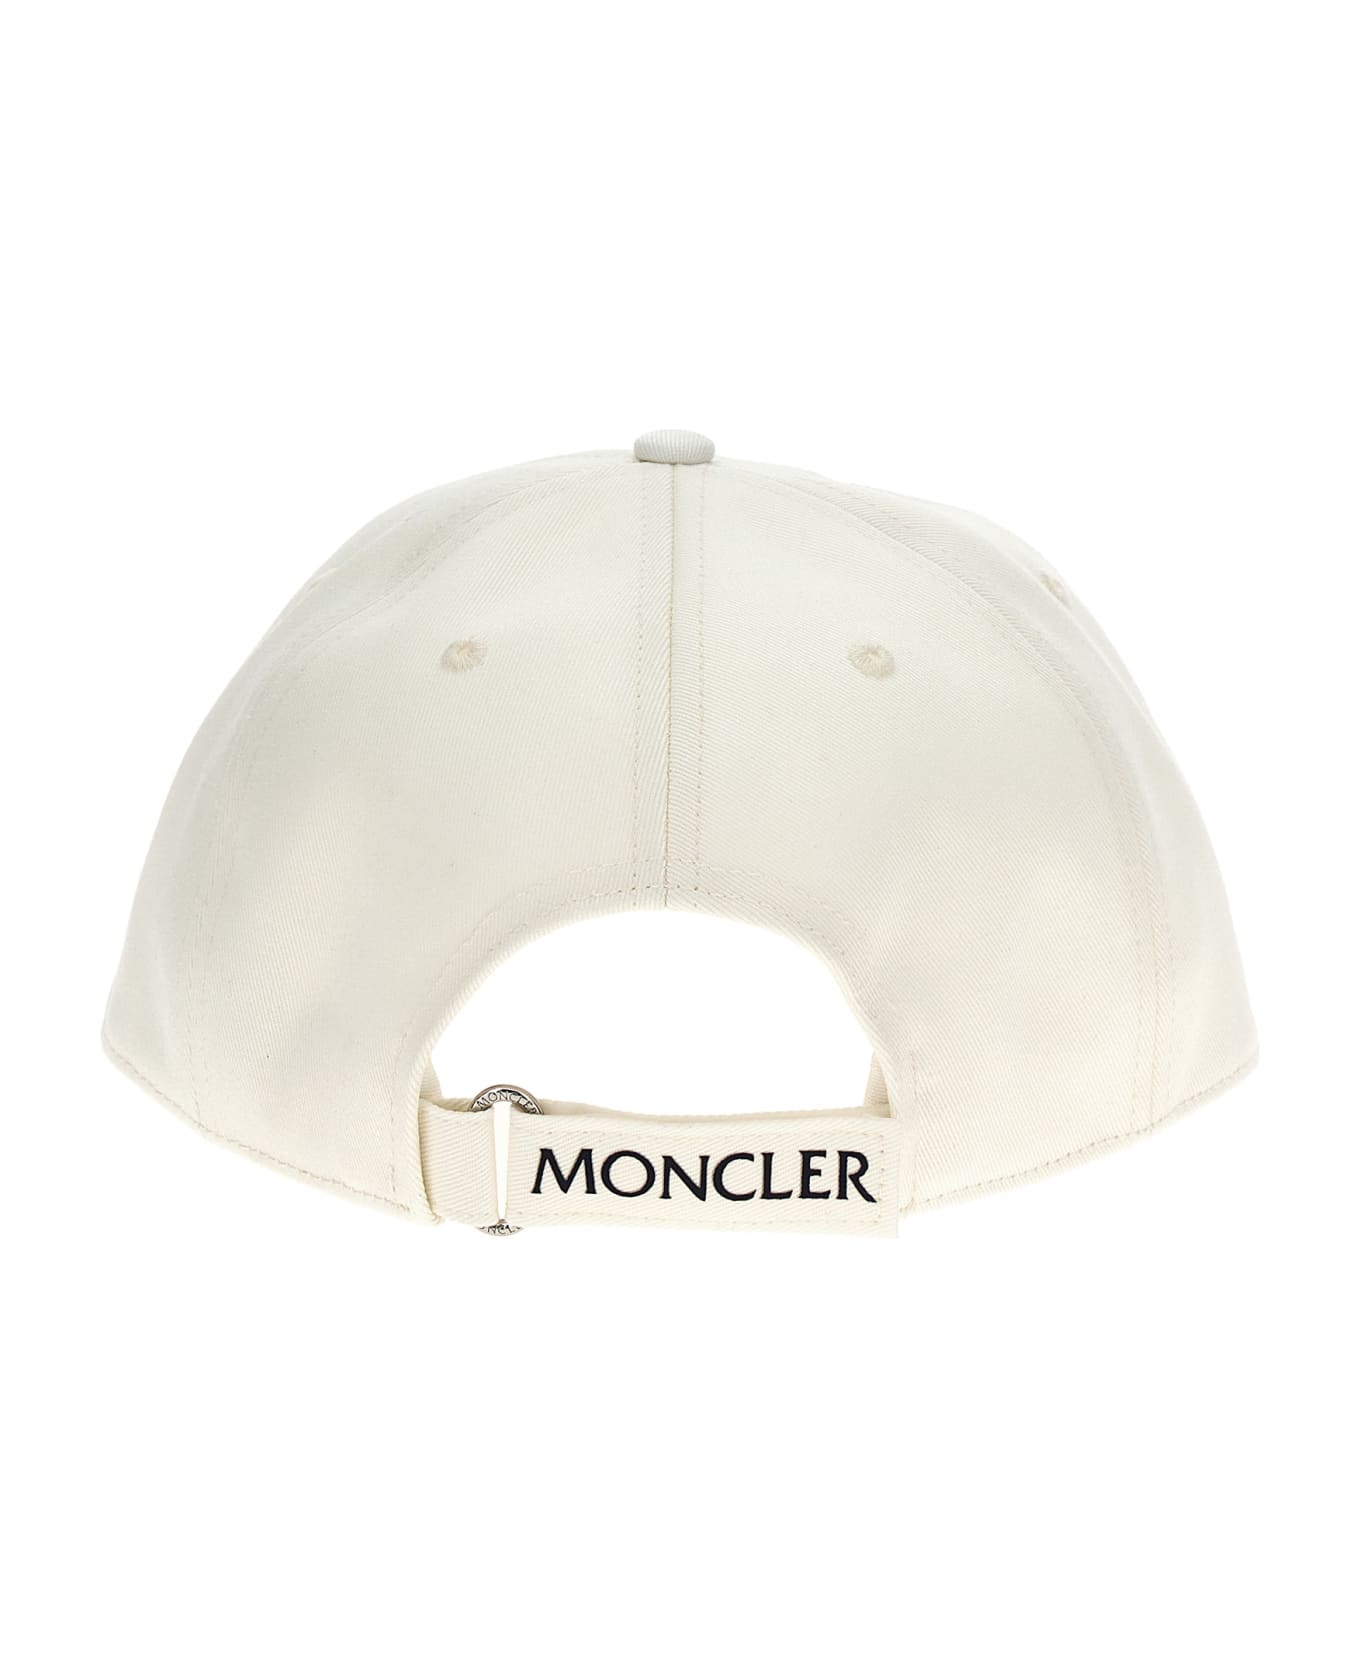 Moncler Logo Patch Cap - White